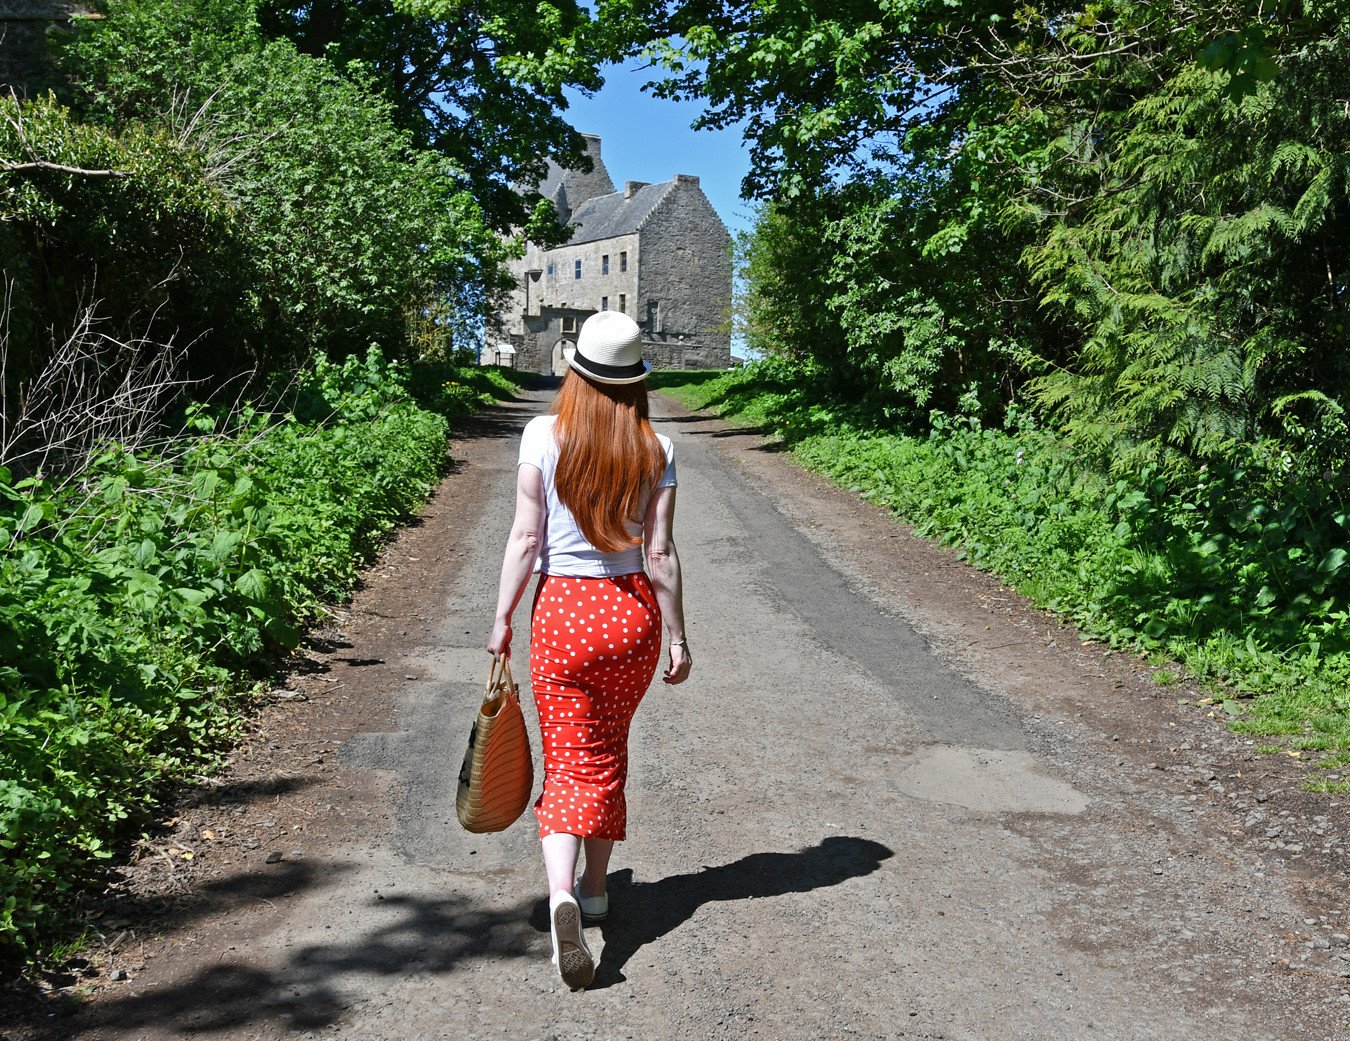 Walking towards Lallybroch - a.k.a Midhope Castle - an Outlander filming location in Scotland